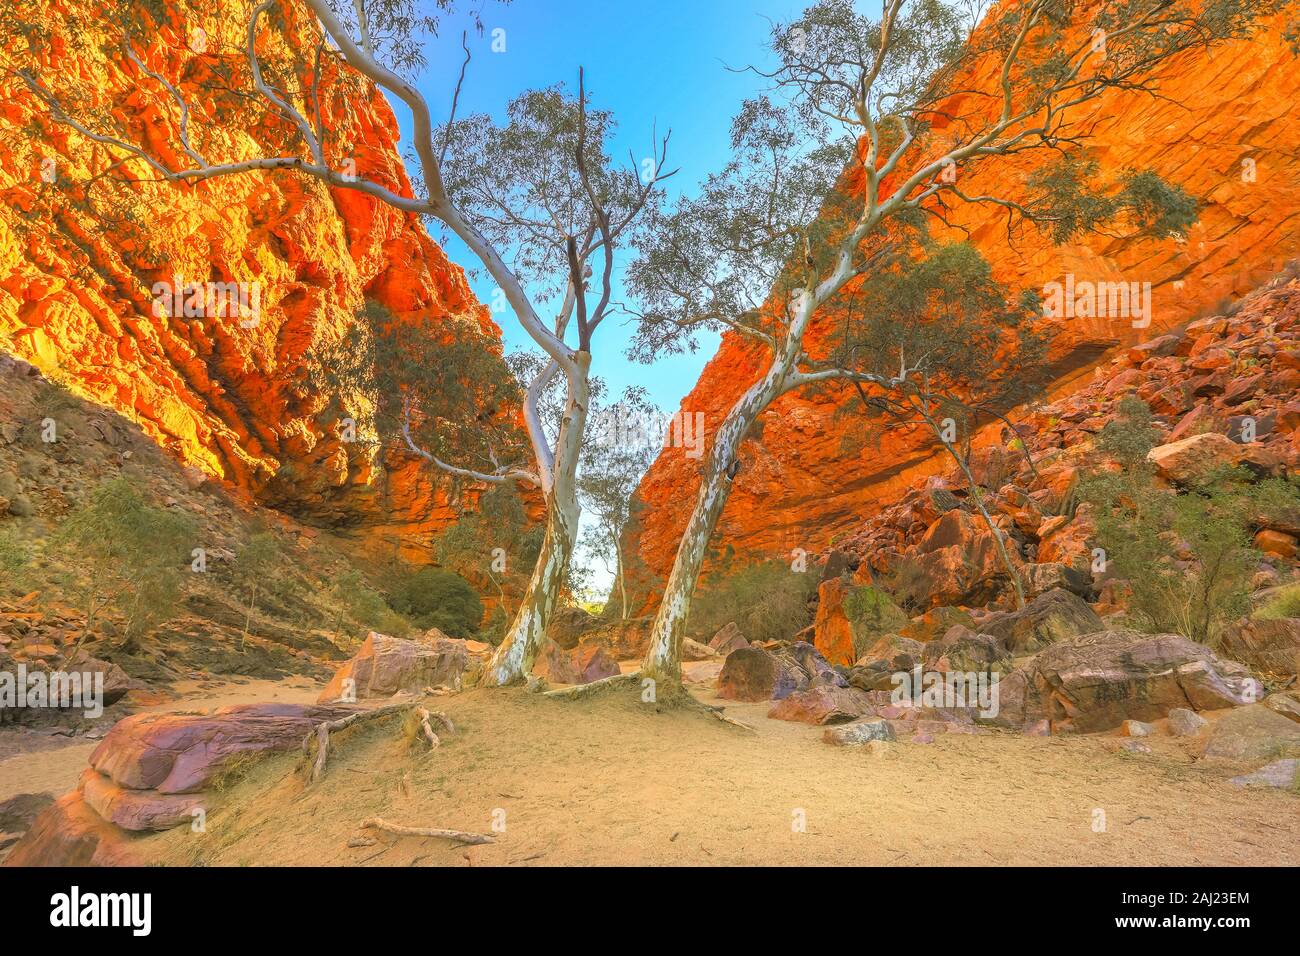 Scenic Simpsons Gap et de végétation permanente dans West MacDonnell Ranges, près d'Alice Springs sur Larapinta Trail en hiver, l'Australie Banque D'Images